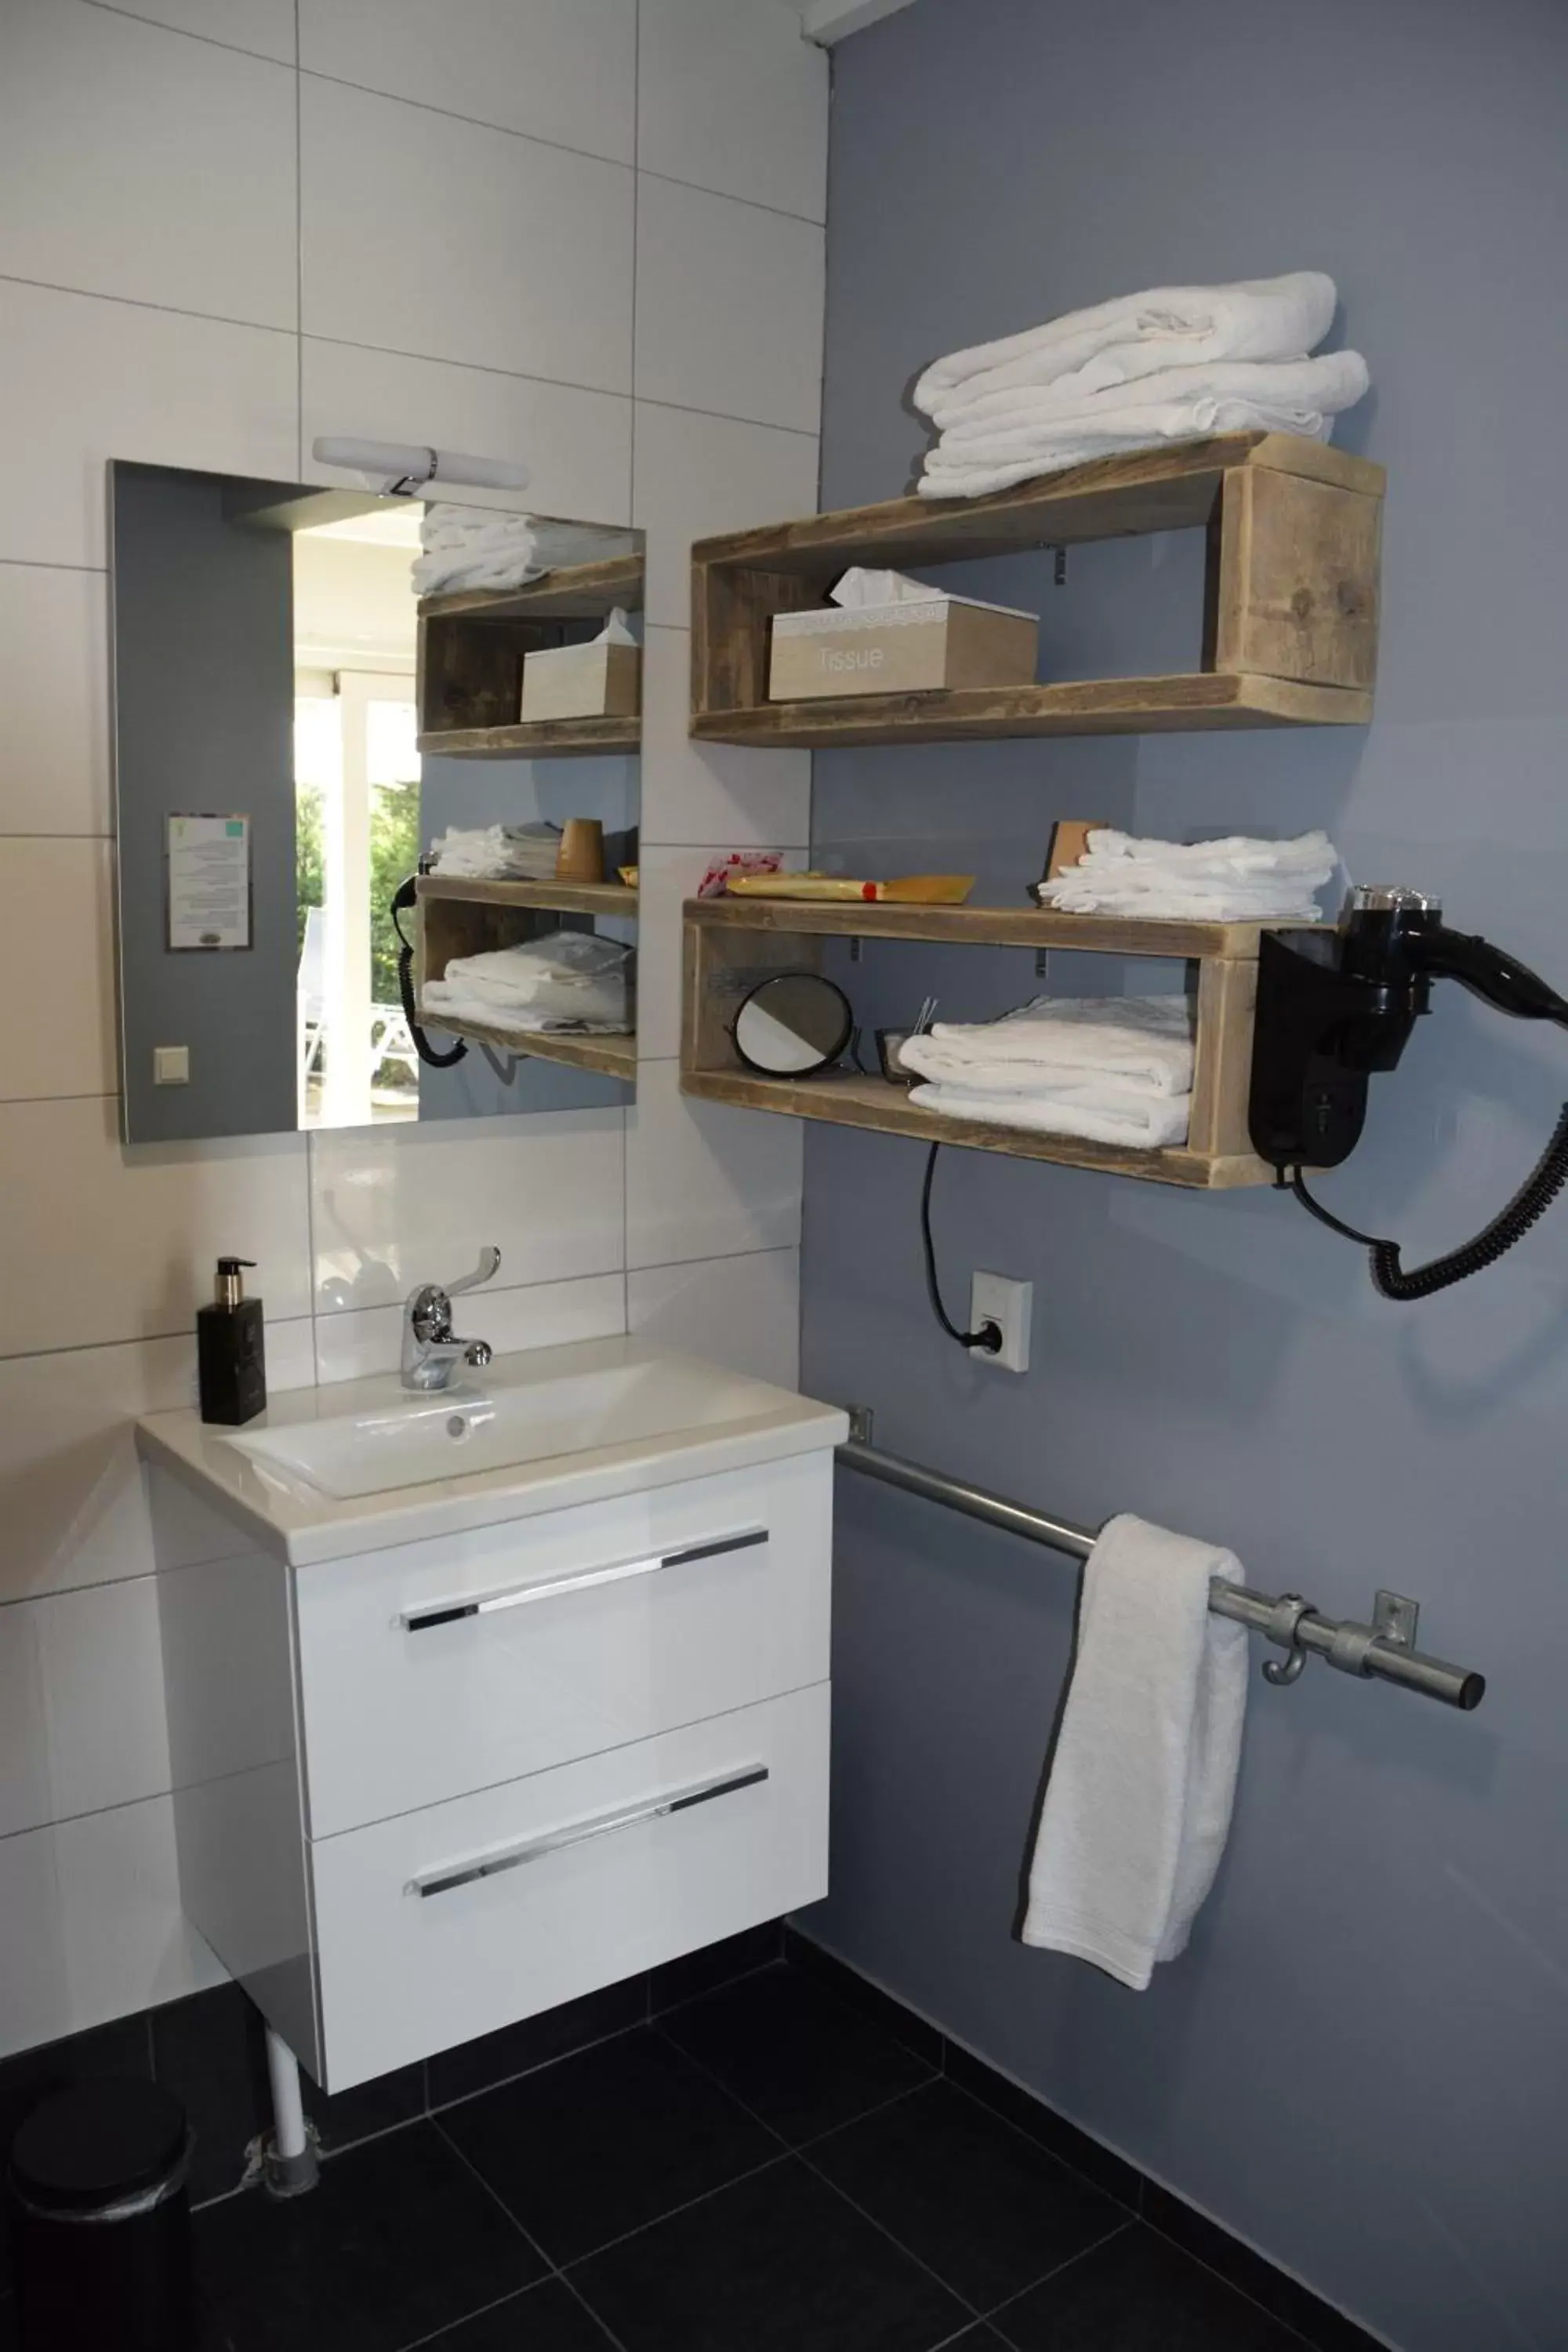 Shower, Bathroom in Bed & Breakfast "Aan de Bagijnstraat".